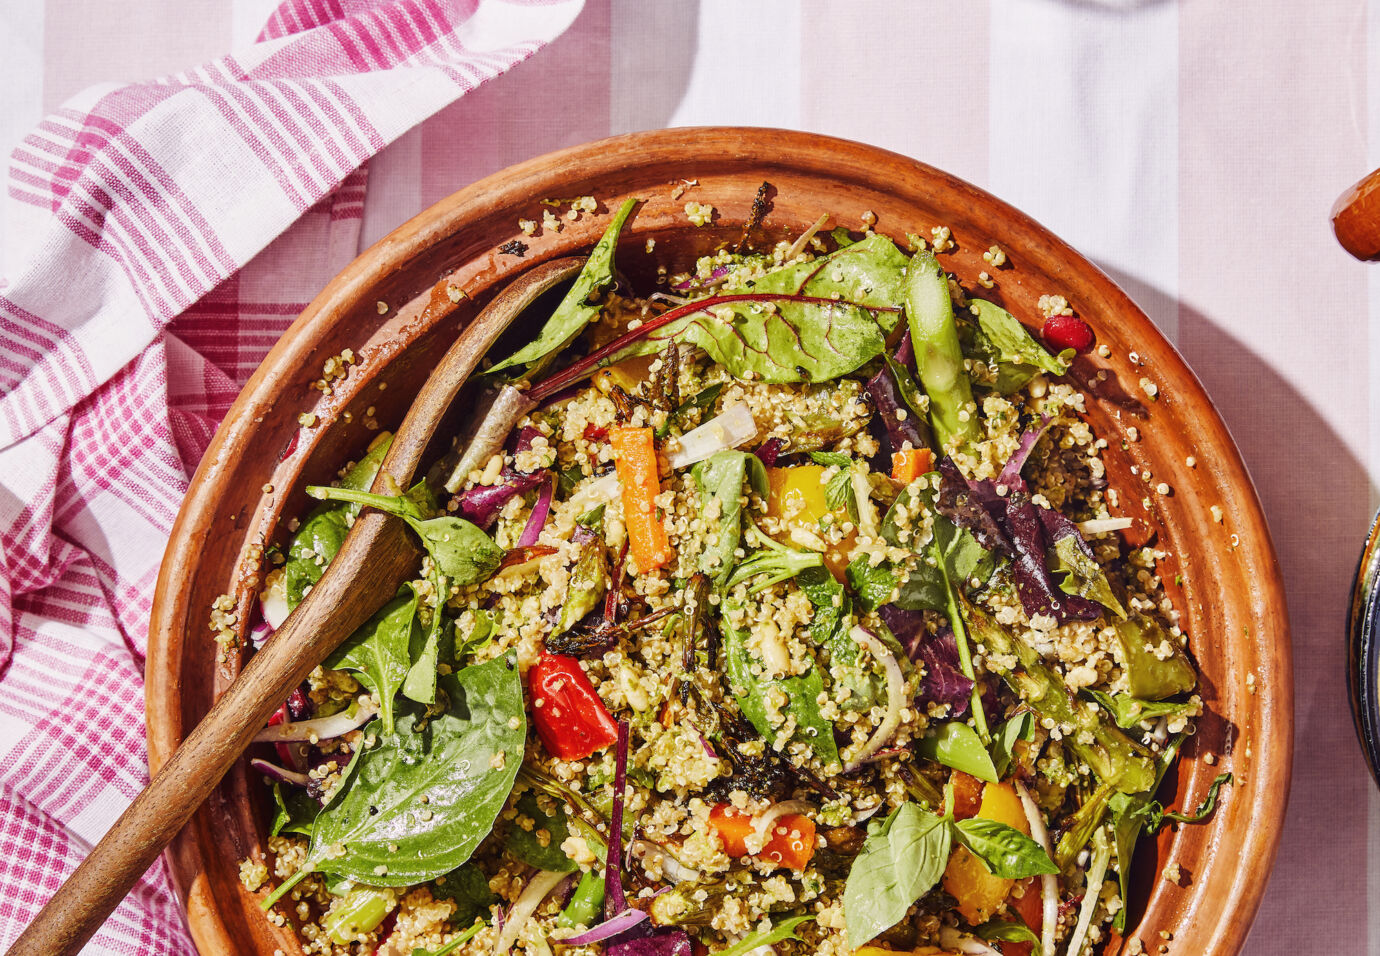 Quinoa salade met gegrilde groenten en pesto - sofie dumont chef